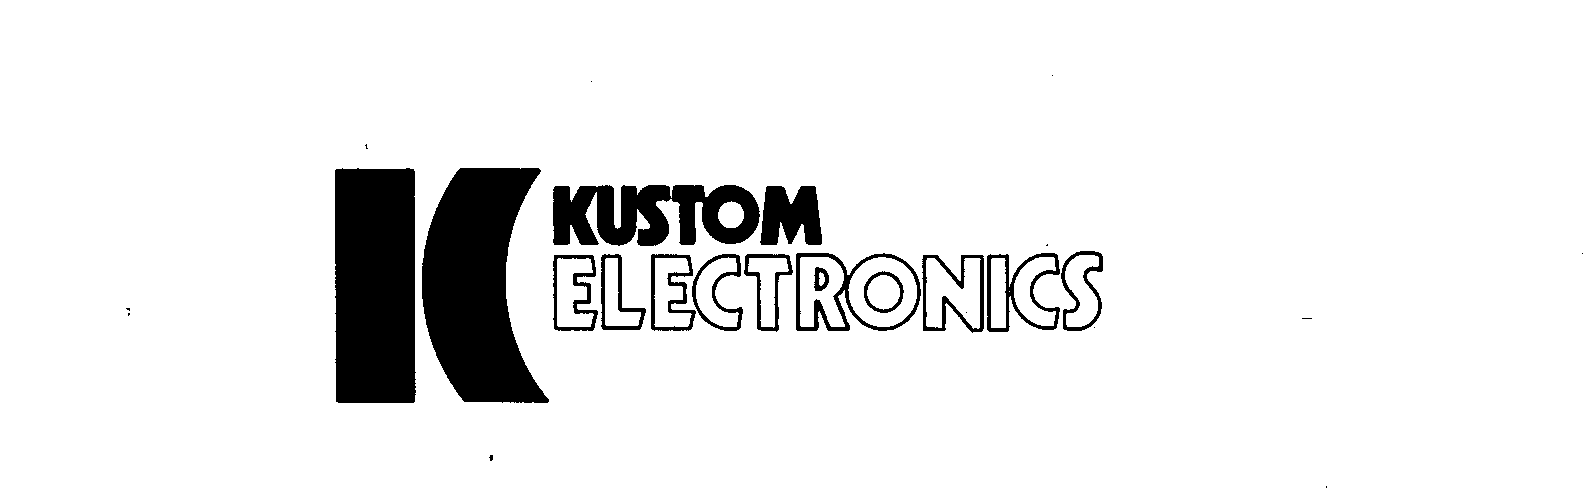  K-KUSTOM ELECTRONICS